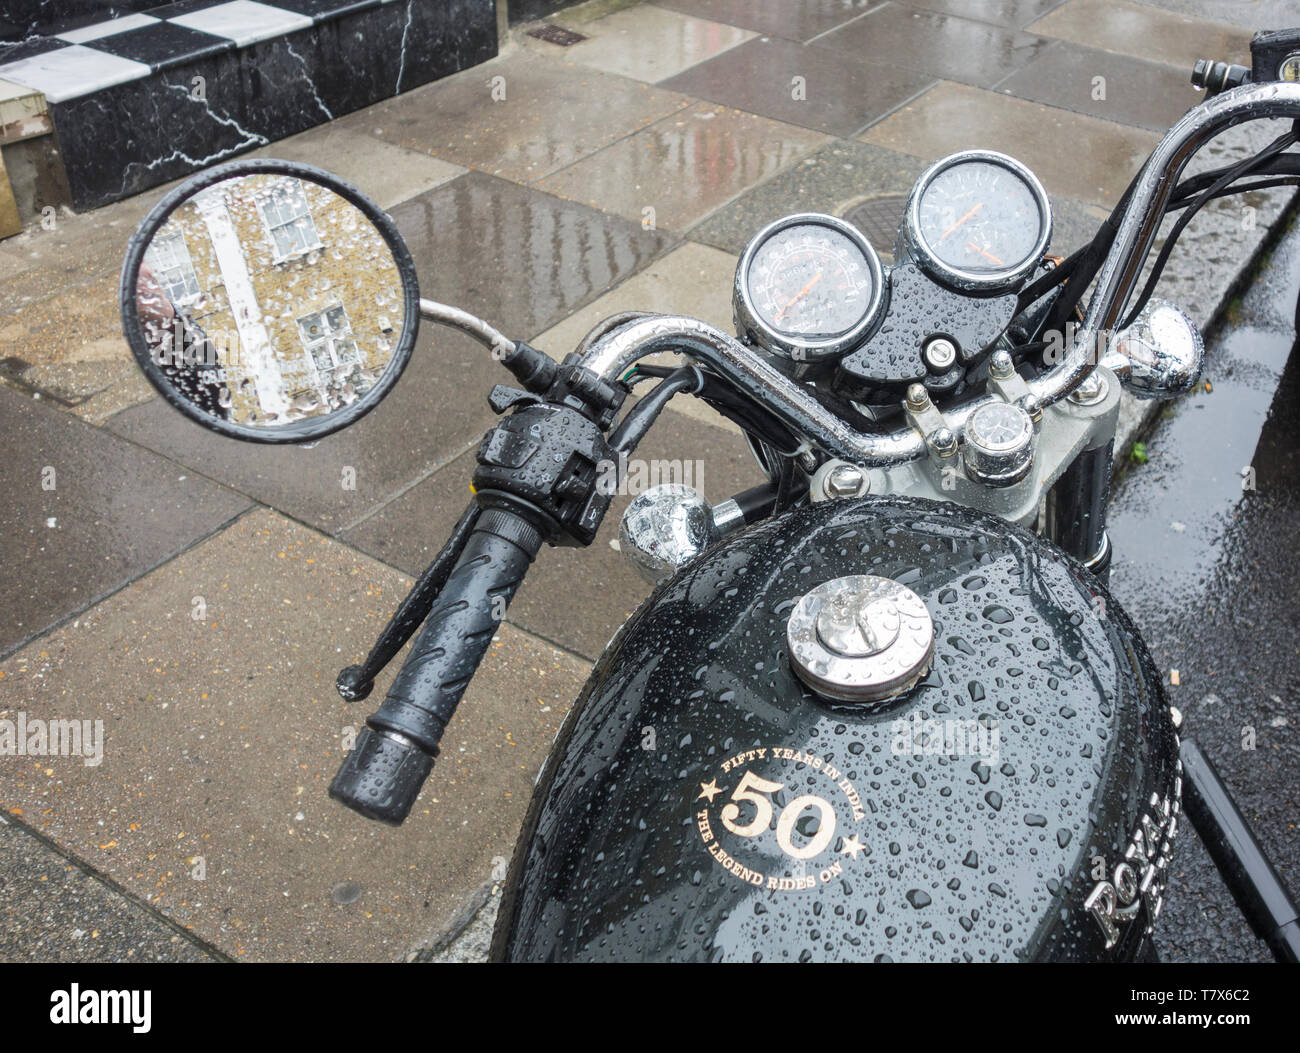 Une Royal Enfield Thunderbird cruiser moto style couvert de gouttes de pluie Banque D'Images